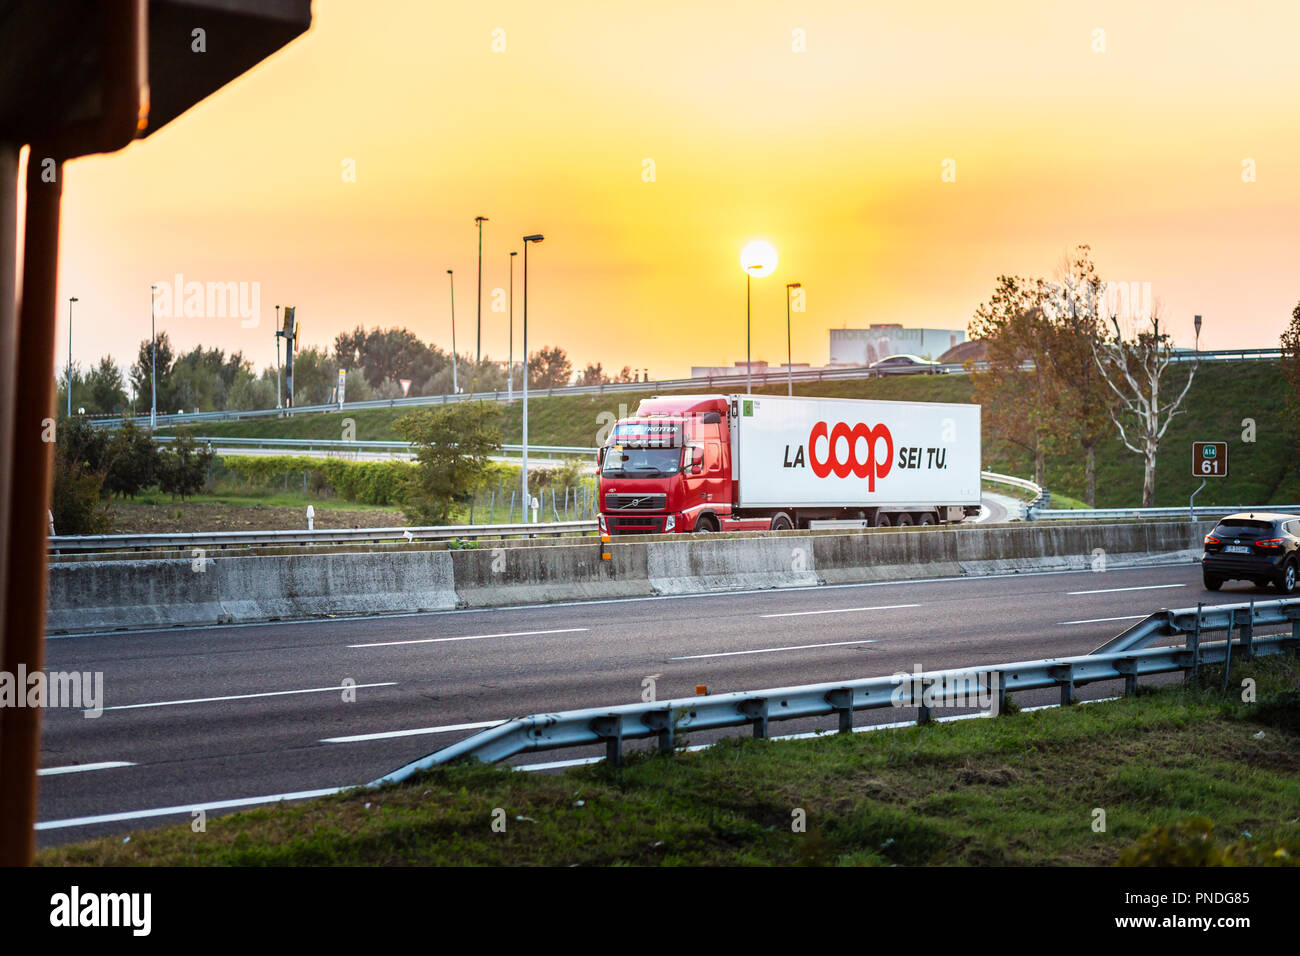 FAENZA (RA), Italia - 20 settembre 2018: carrello con logo COOP in esecuzione su autostrada Foto Stock